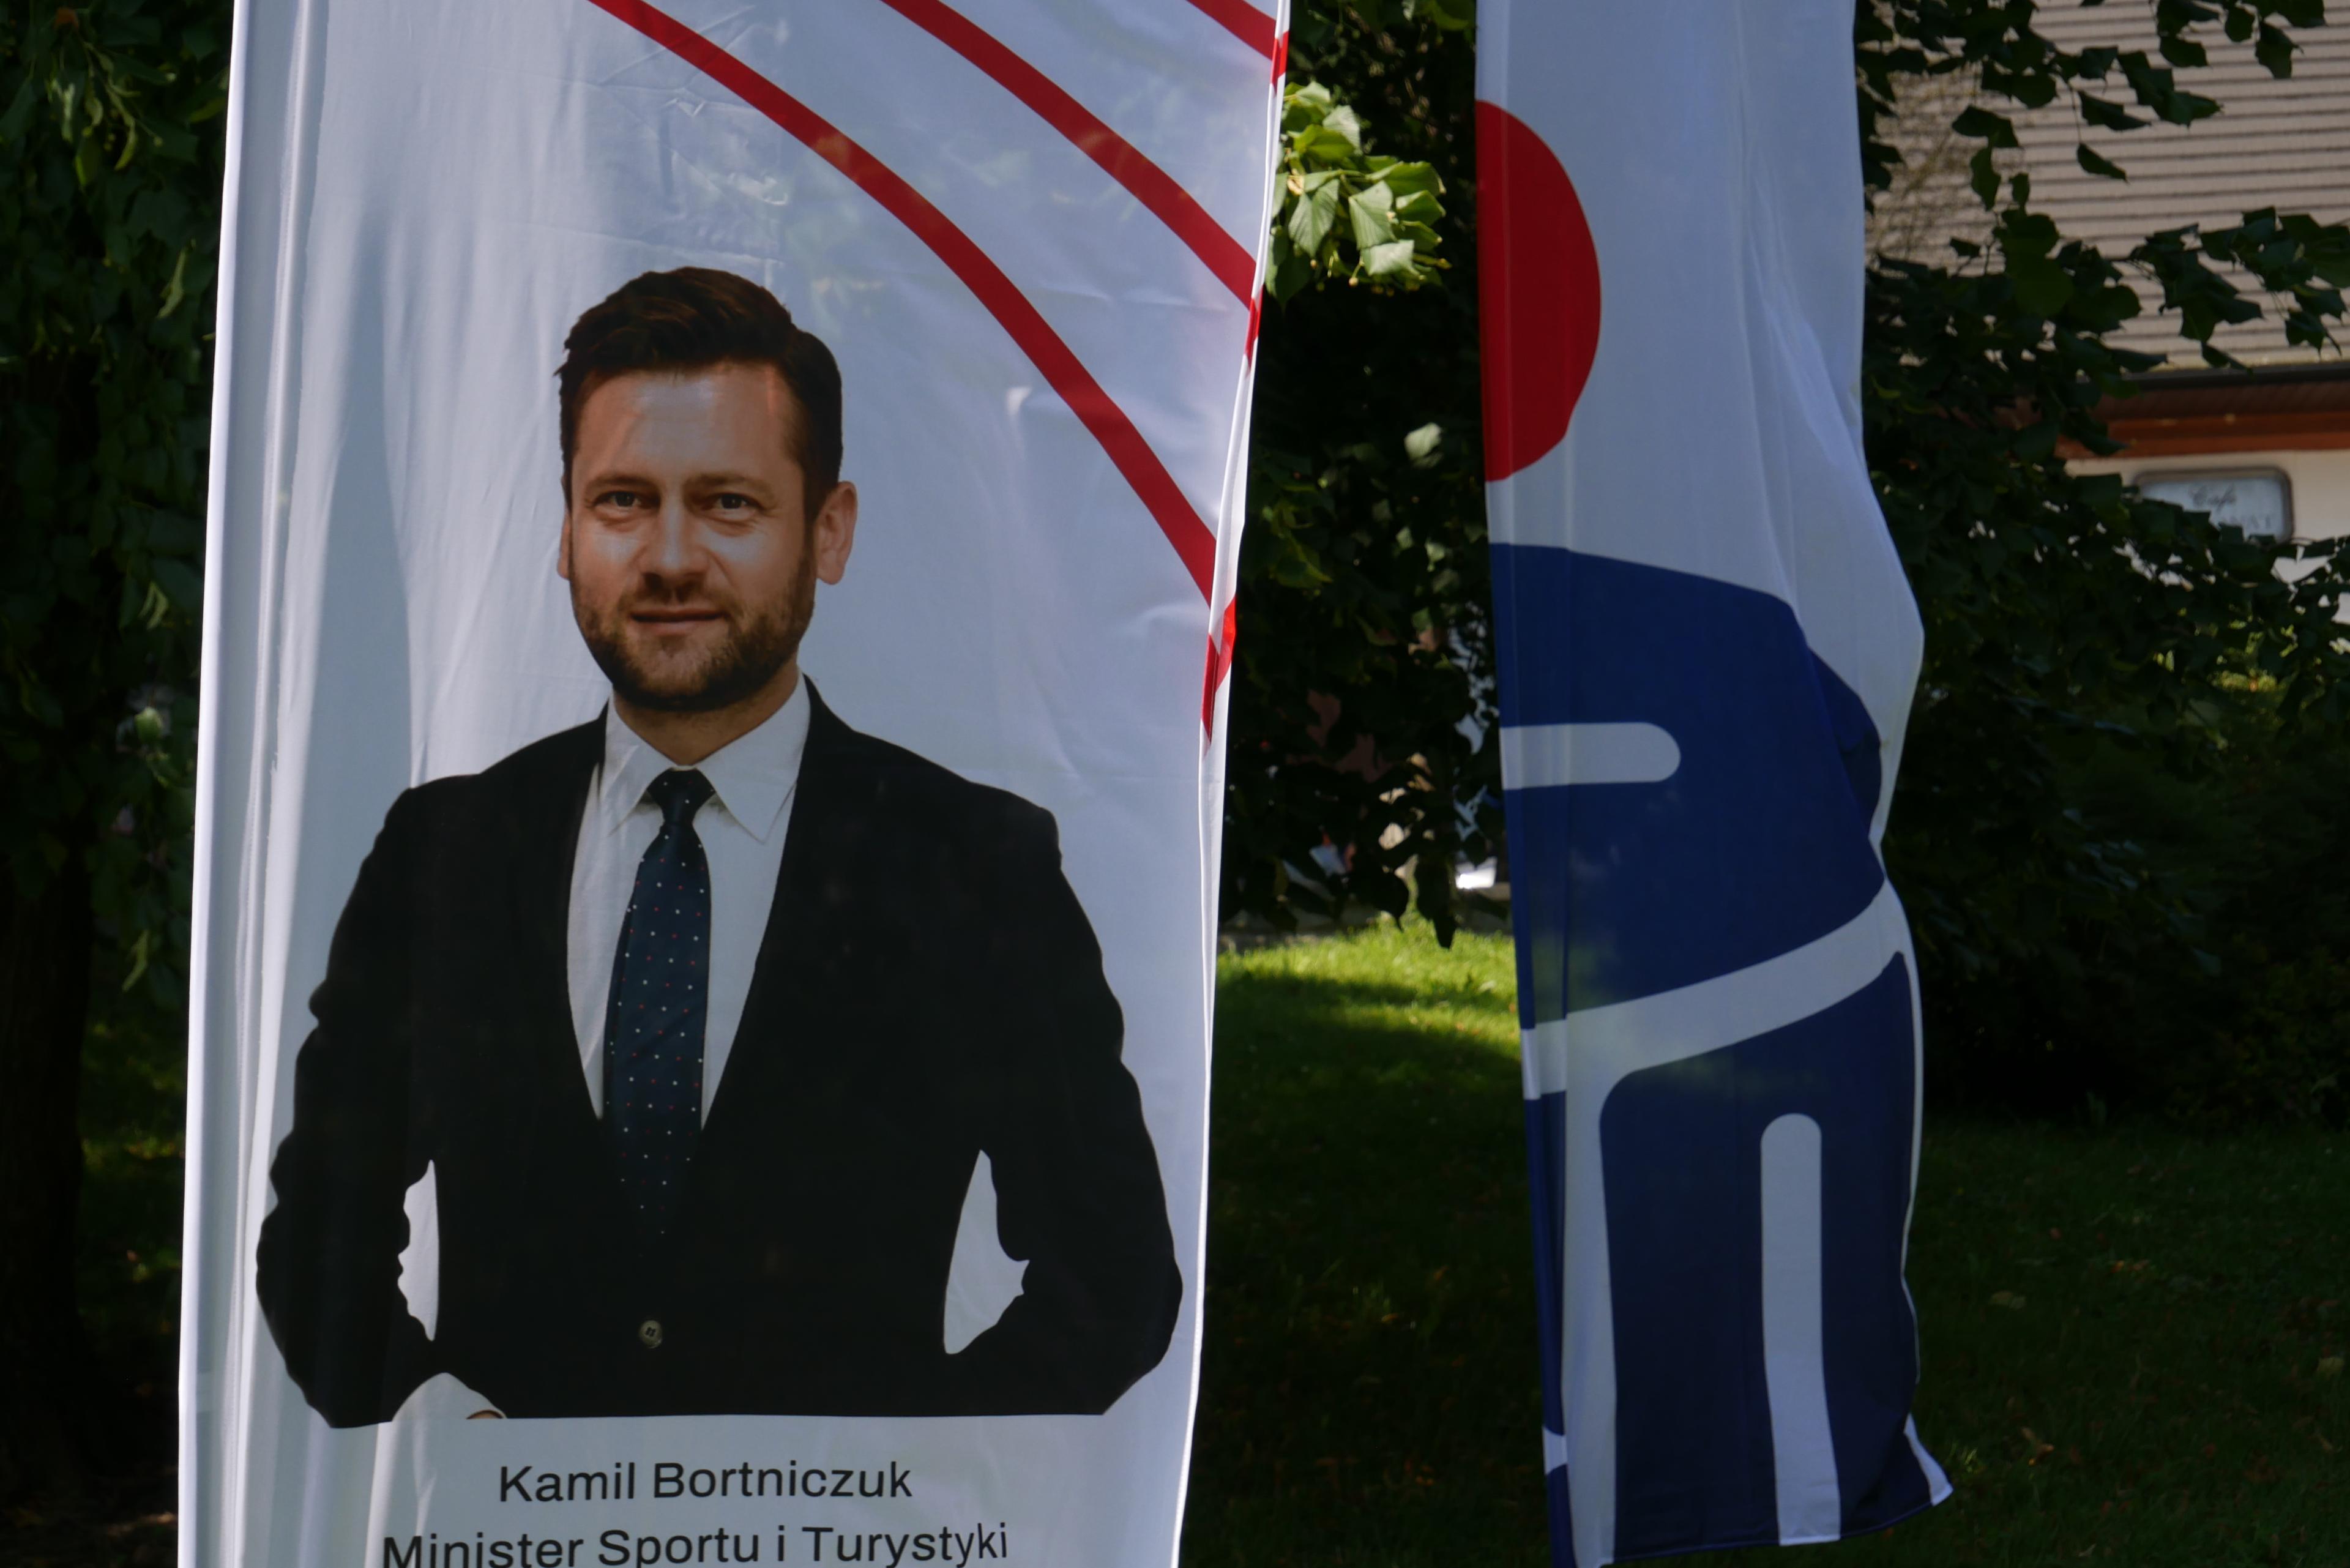 plakat z mężczyzną w garniturze i podpisem "Kamil Bortniczuk"